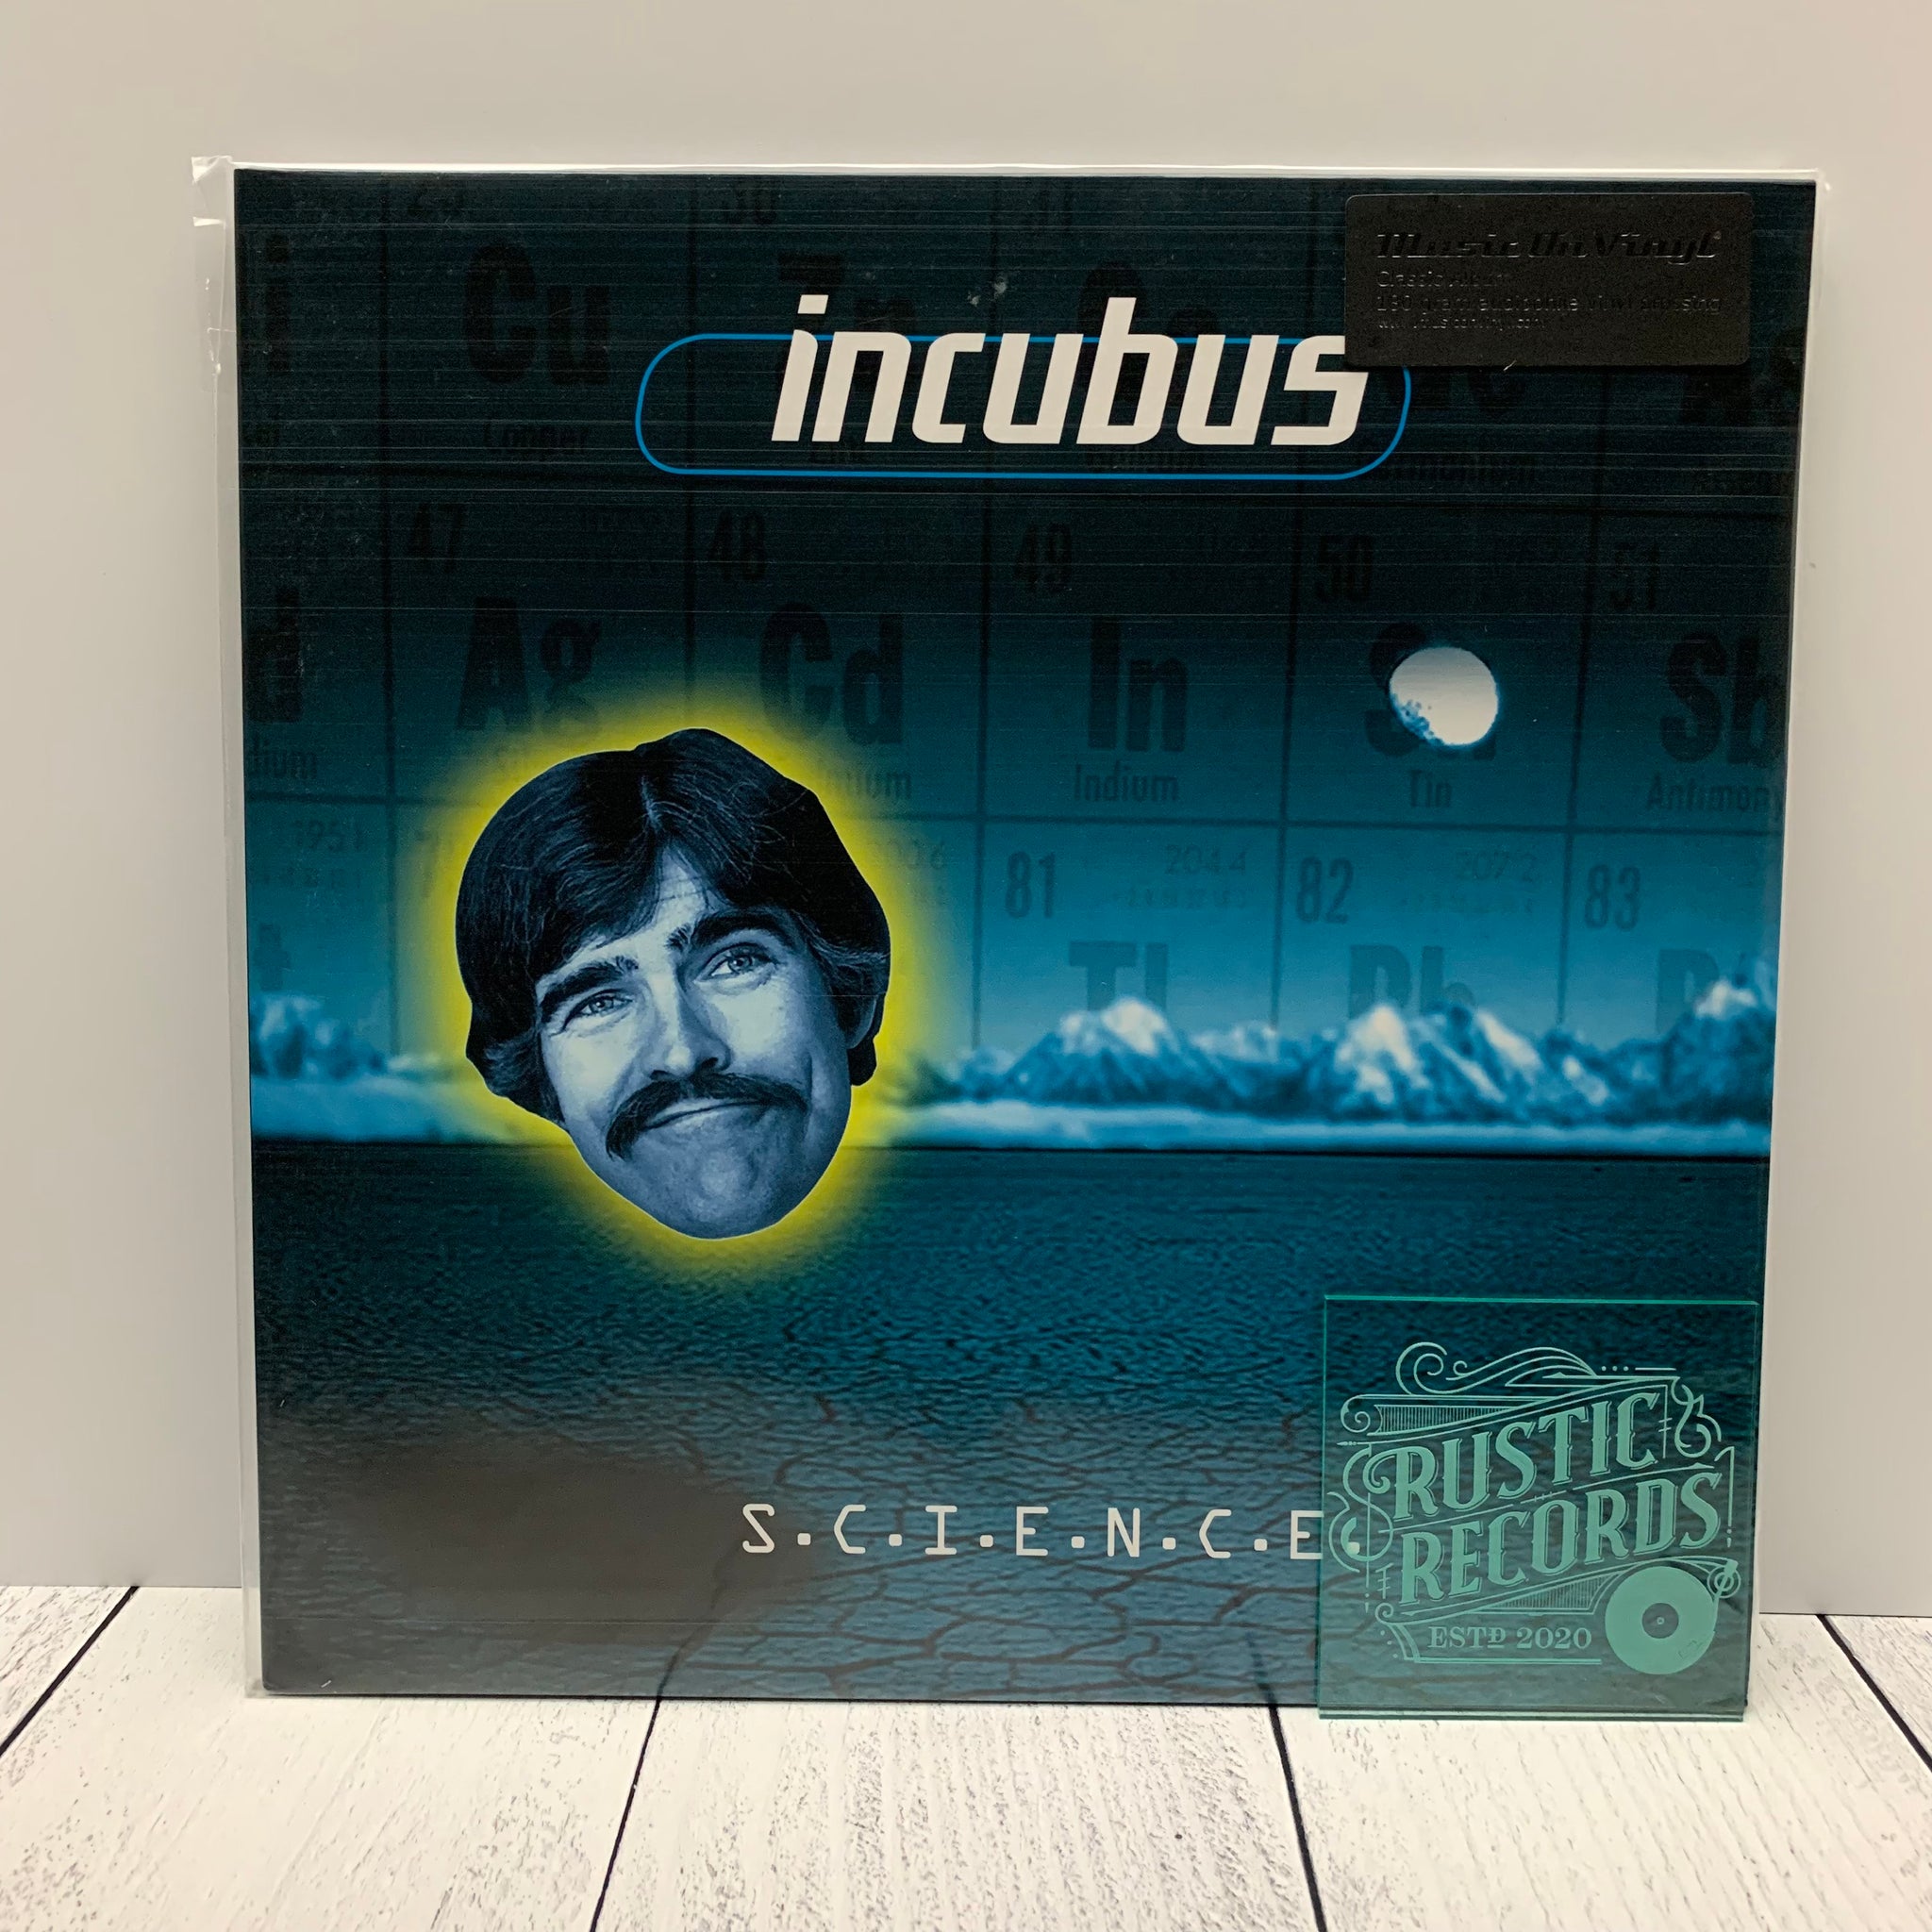 Incubus - S.C.I.E.N.C.E. (Music On Vinyl)